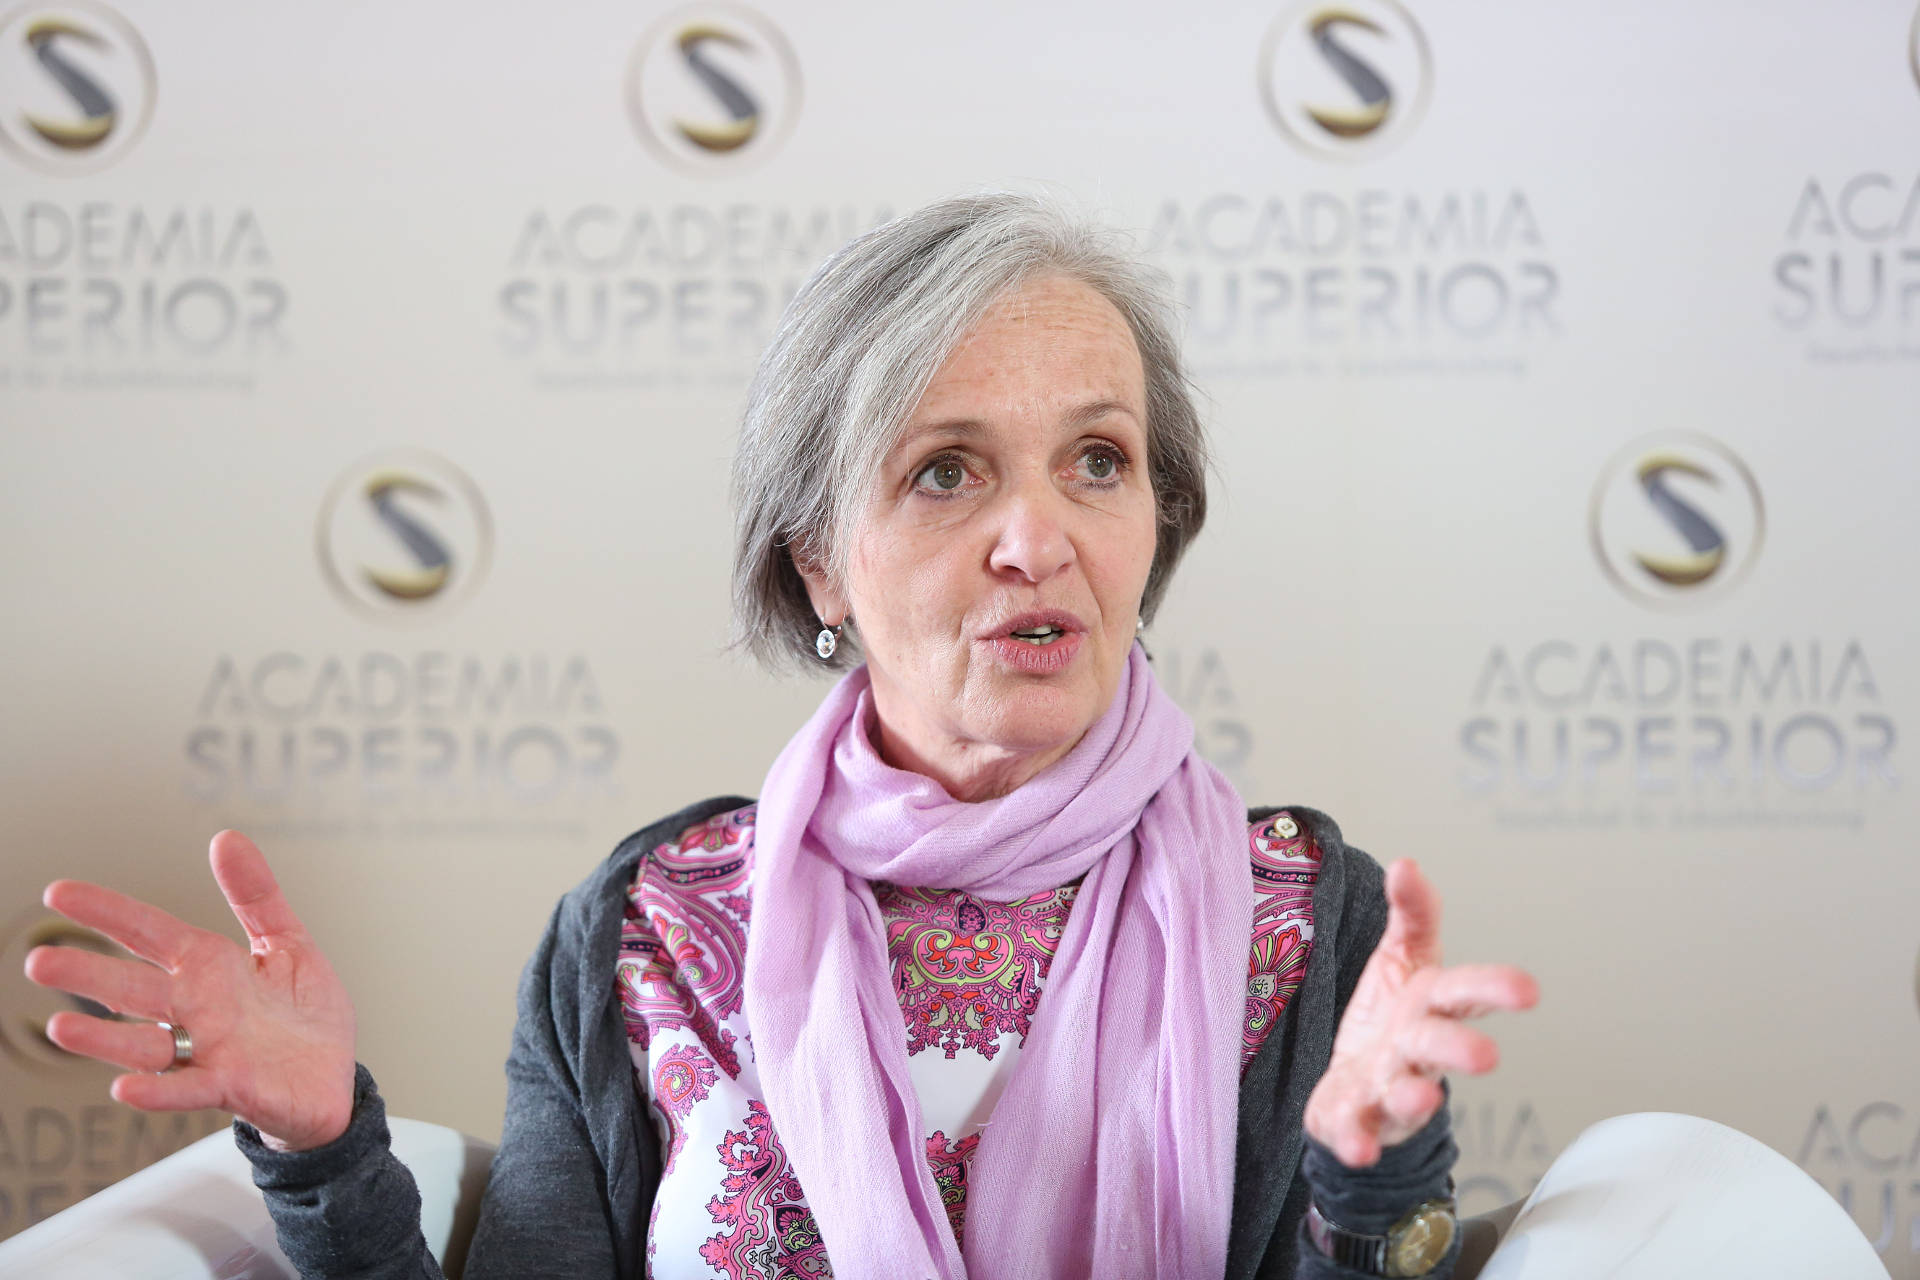 Herta Steinkellner beim Symposium 2015